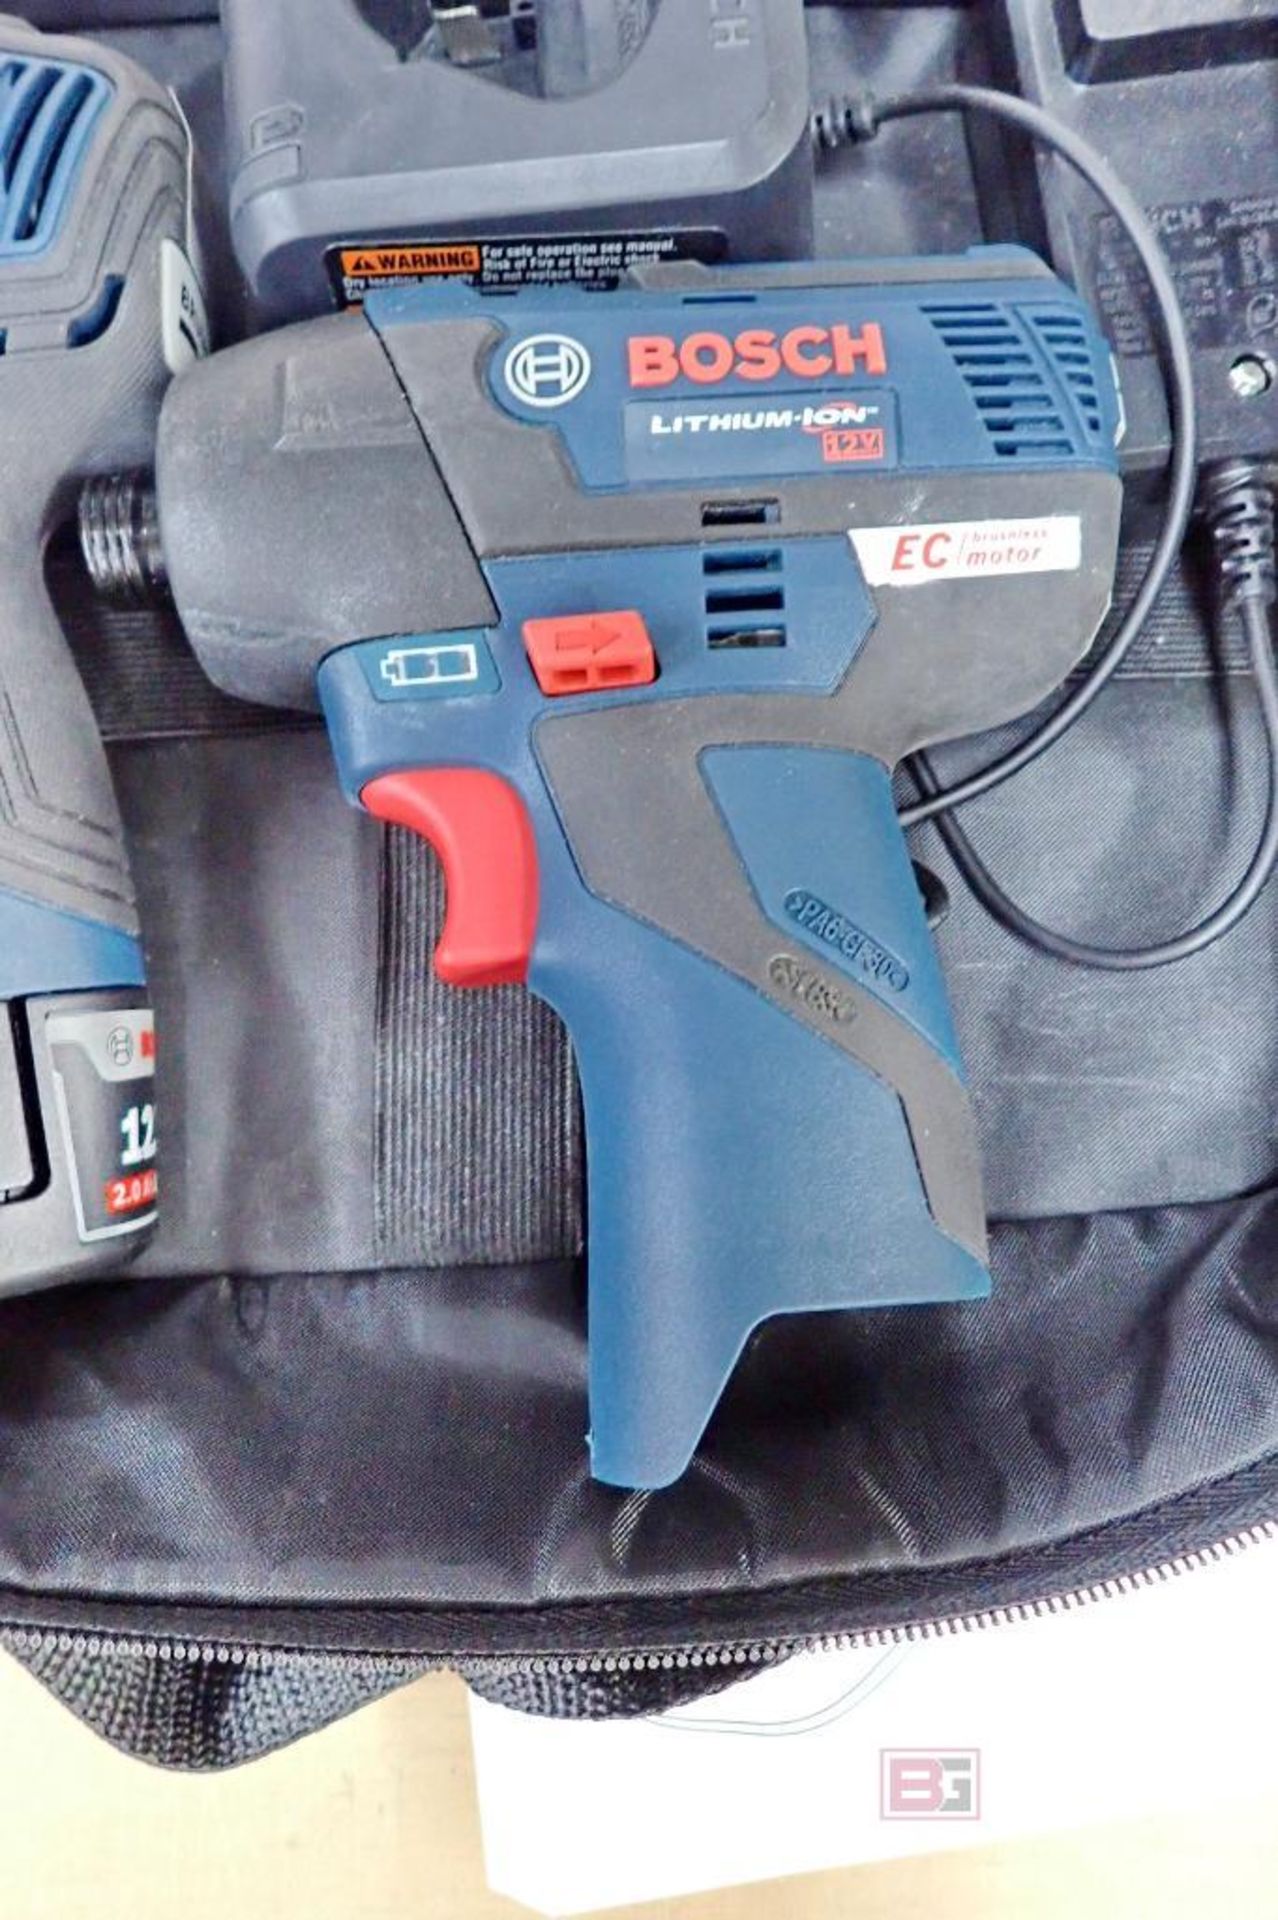 Bosch GXL12V-220B22-RT Brushless Combo Kit w/ Driller - Driver - Image 5 of 8